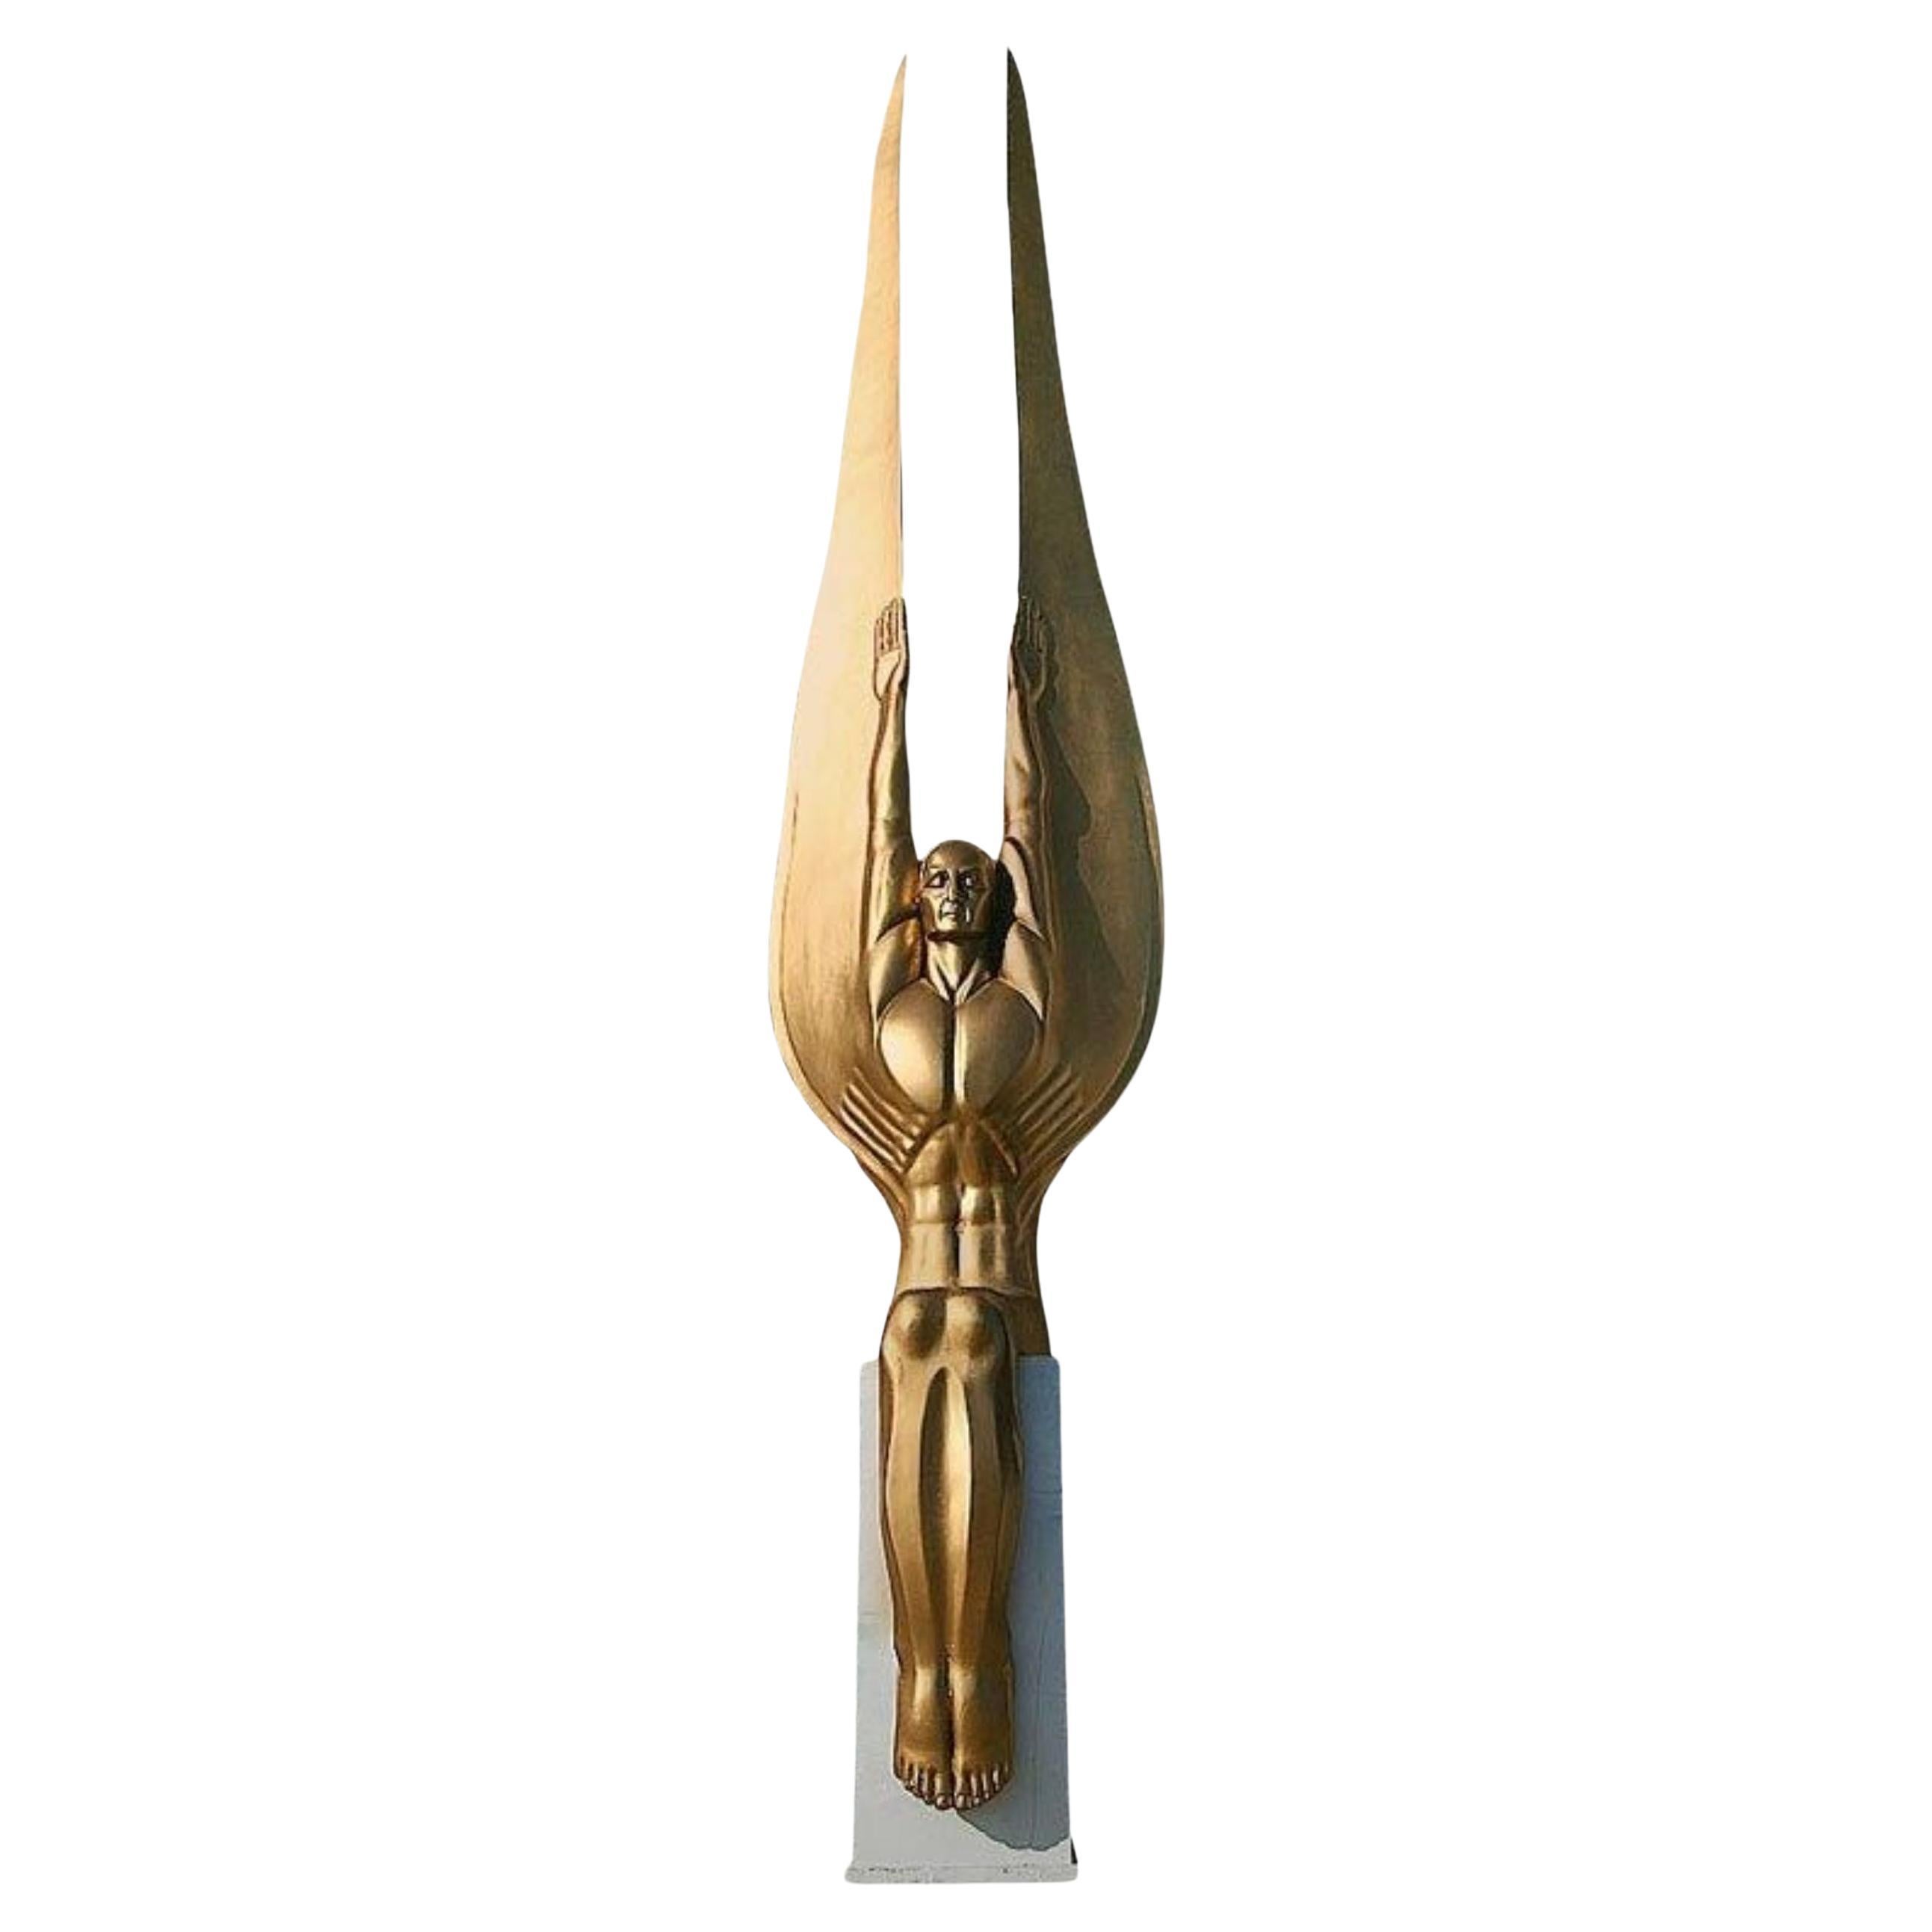 Art Deco Style Angel Sculpture "Wings of the Republic" by Oskar J.W. Hansen For Sale